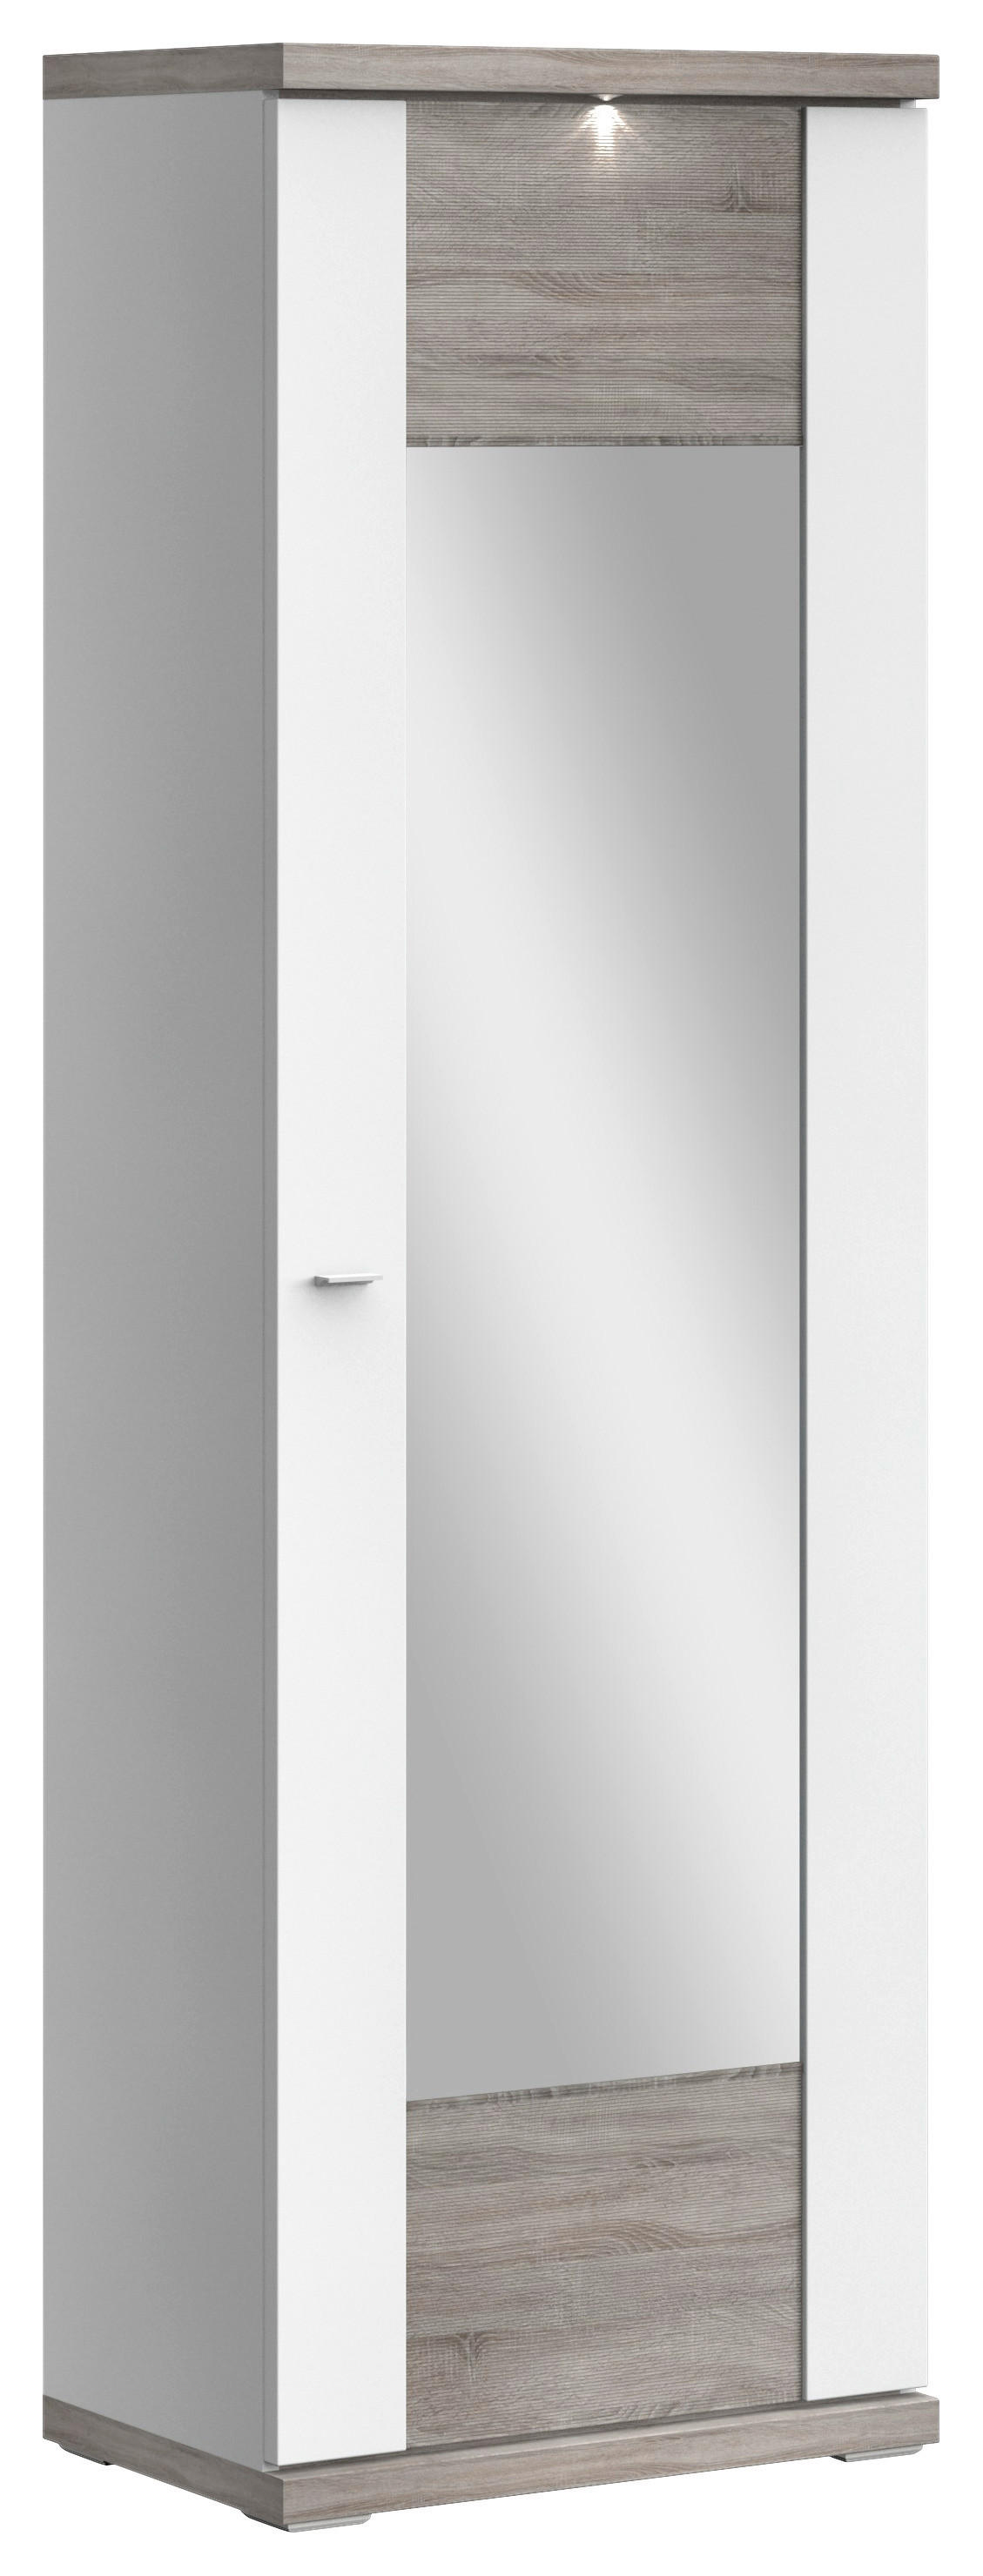 GARDEROBENSCHRANK Weiß, Eichefarben  - Chromfarben/Eichefarben, Design, Glas/Holzwerkstoff (65/206,6/41,6cm) - Xora